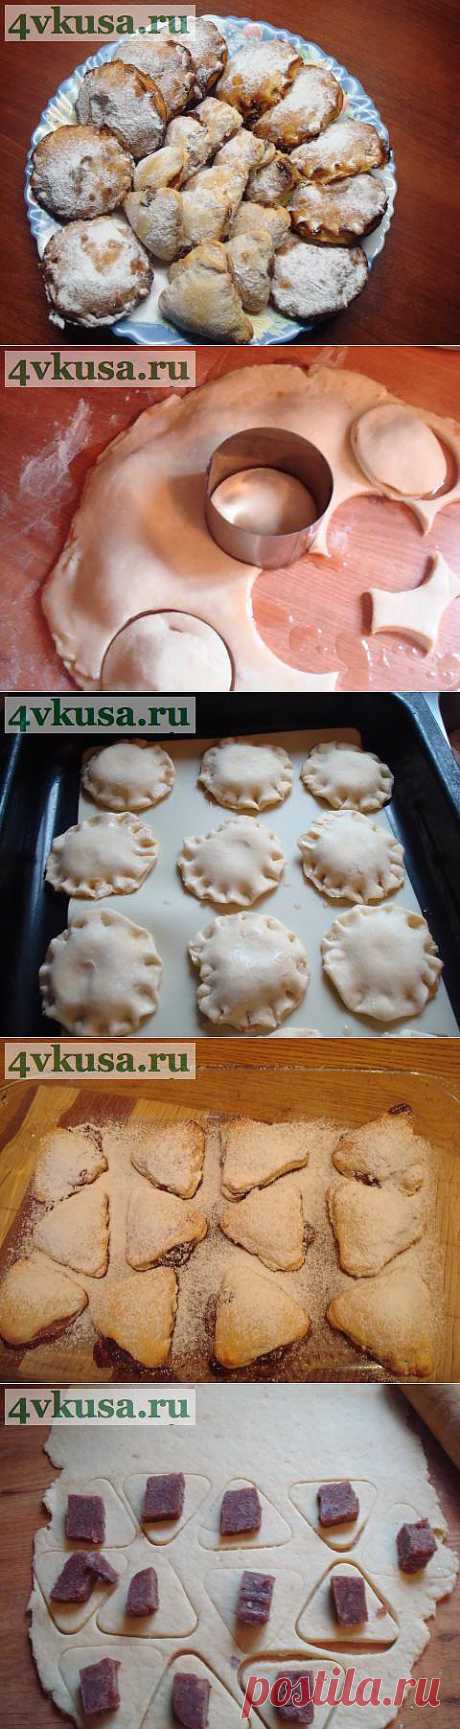 Творожное печенье с начинками | 4vkusa.ru